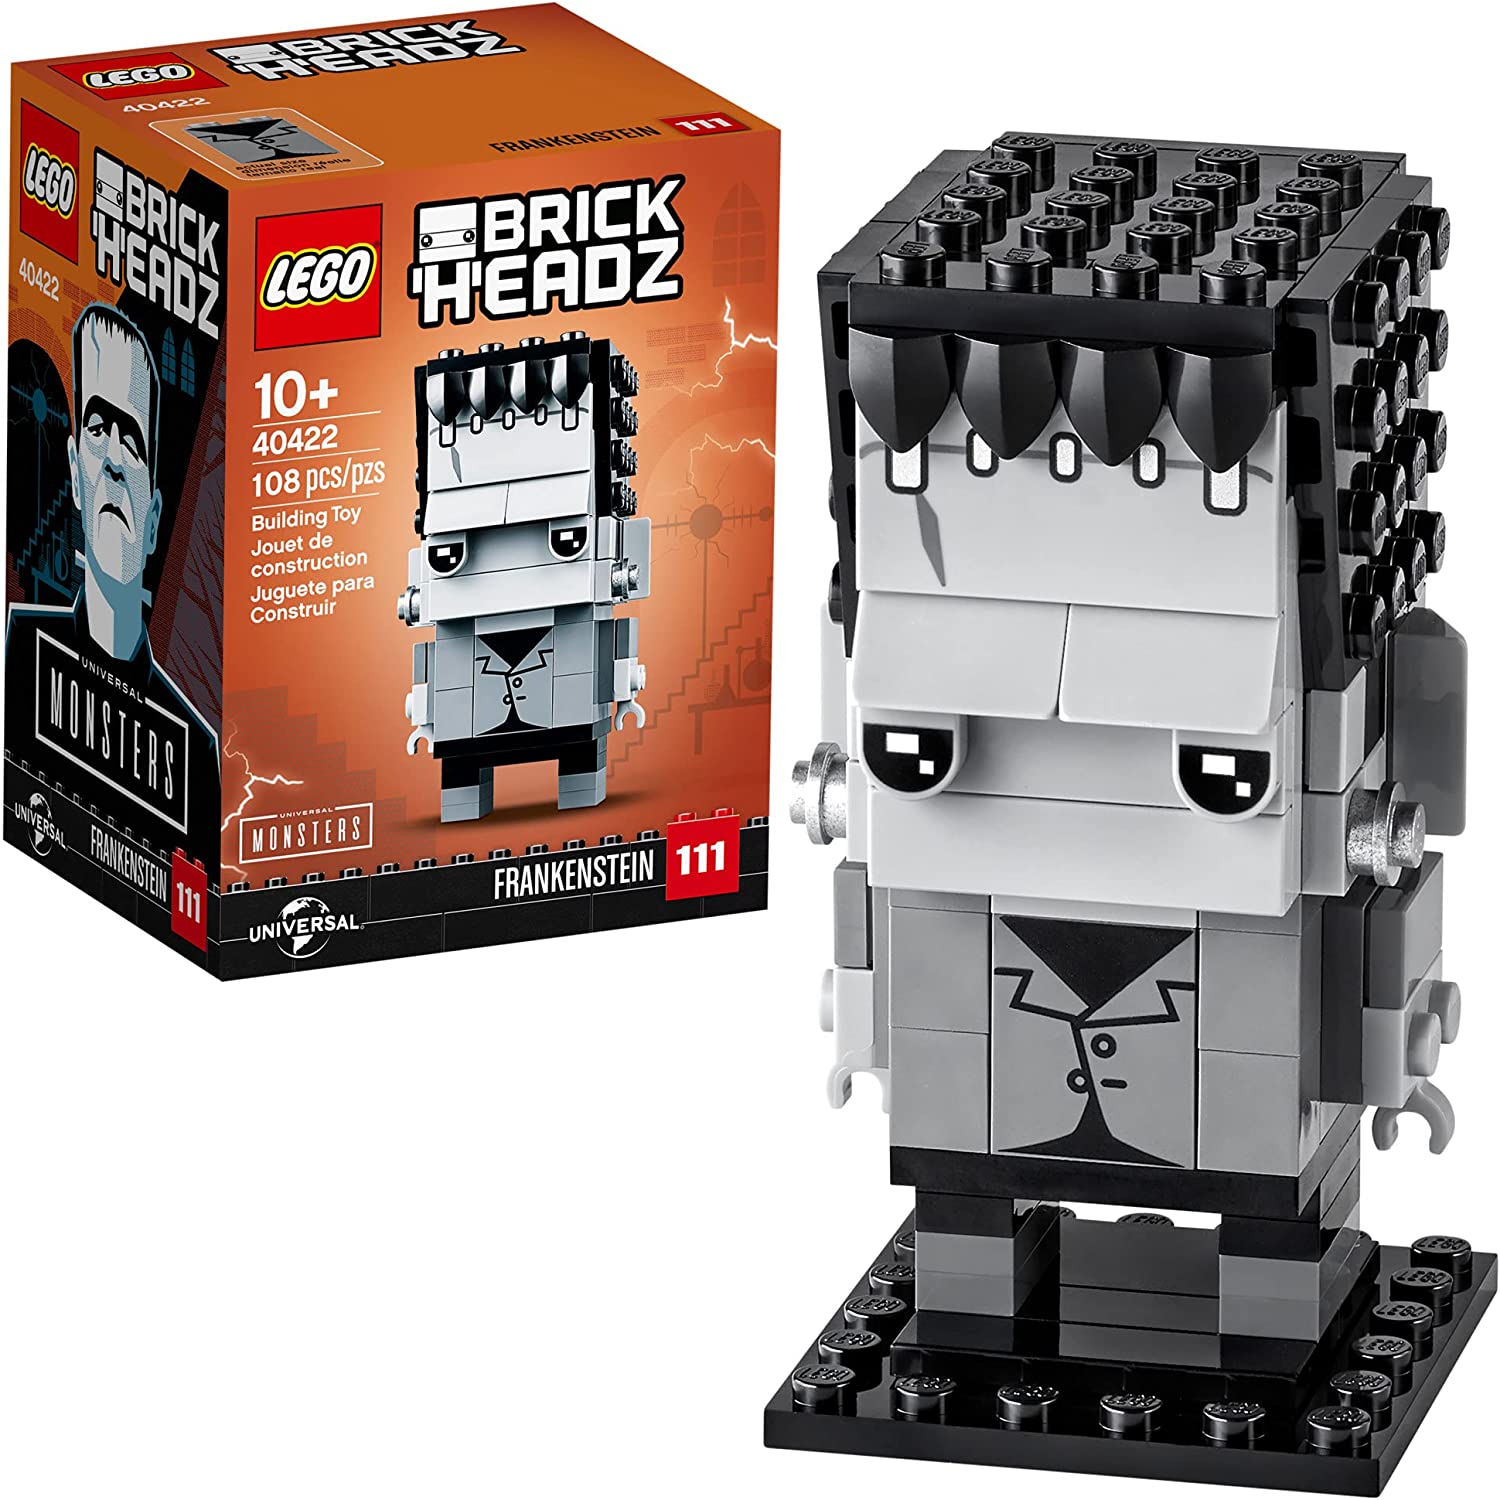 108-Pieces LEGO BrickHeadz Frankenstein Building Kit (40422) $7.29 + Free Shipping w/ Prime or $25+